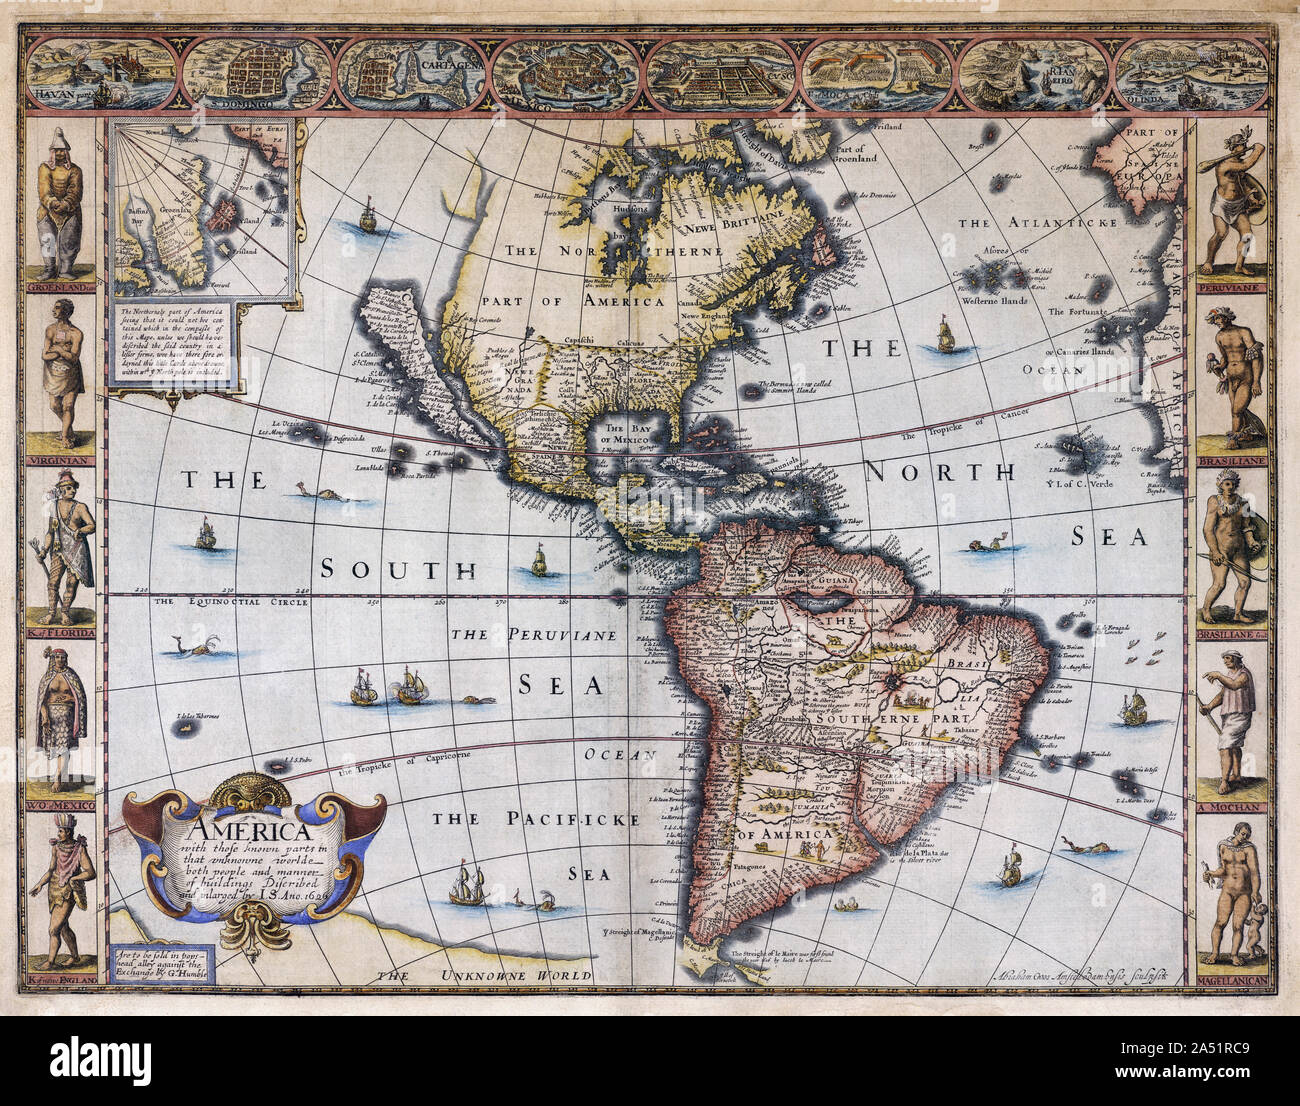 Mapa de América publicado por el cartógrafo John velocidad circa 1627. La orla inferior izquierda, lee: América con las conocidas piezas en que unknowne worlde ambas personas y la forma de los edificios. California es representado como una isla. Foto de stock